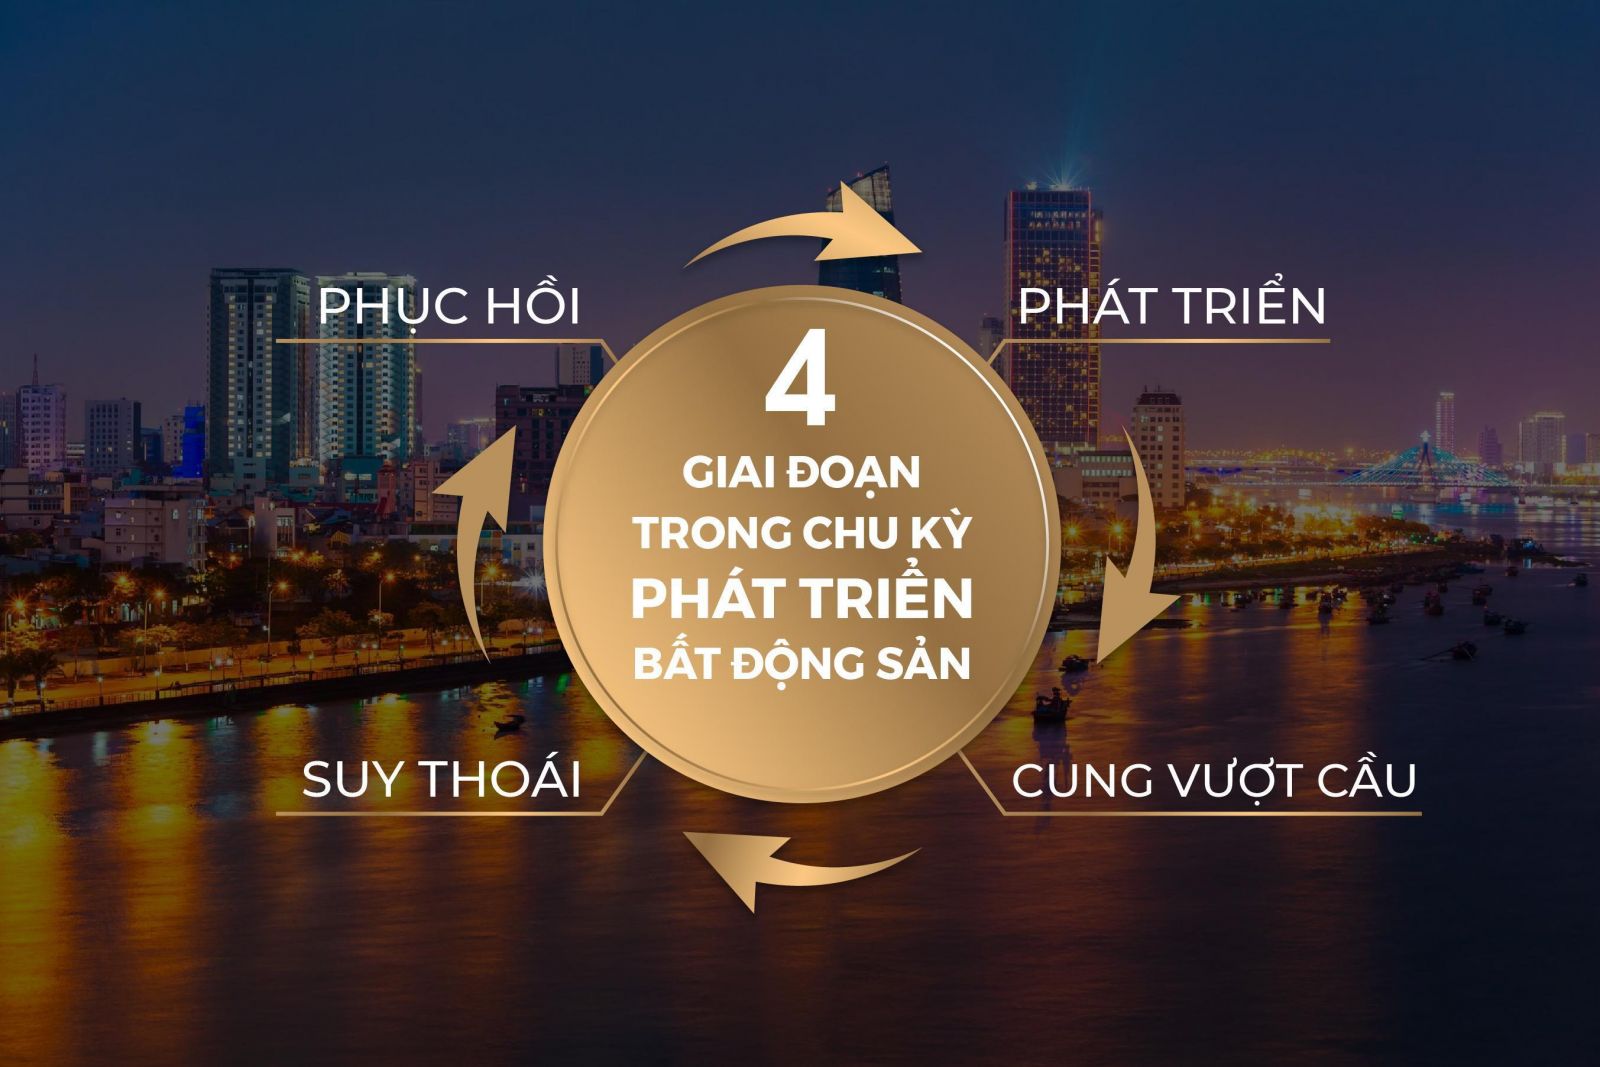 XU HƯỚNG ĐẦU TƯ BẤT ĐỘNG SẢN NÀO ĐANG HÌNH THÀNH TRONG MÙA DỊCH COVID-19? - Viet Nam Smart City